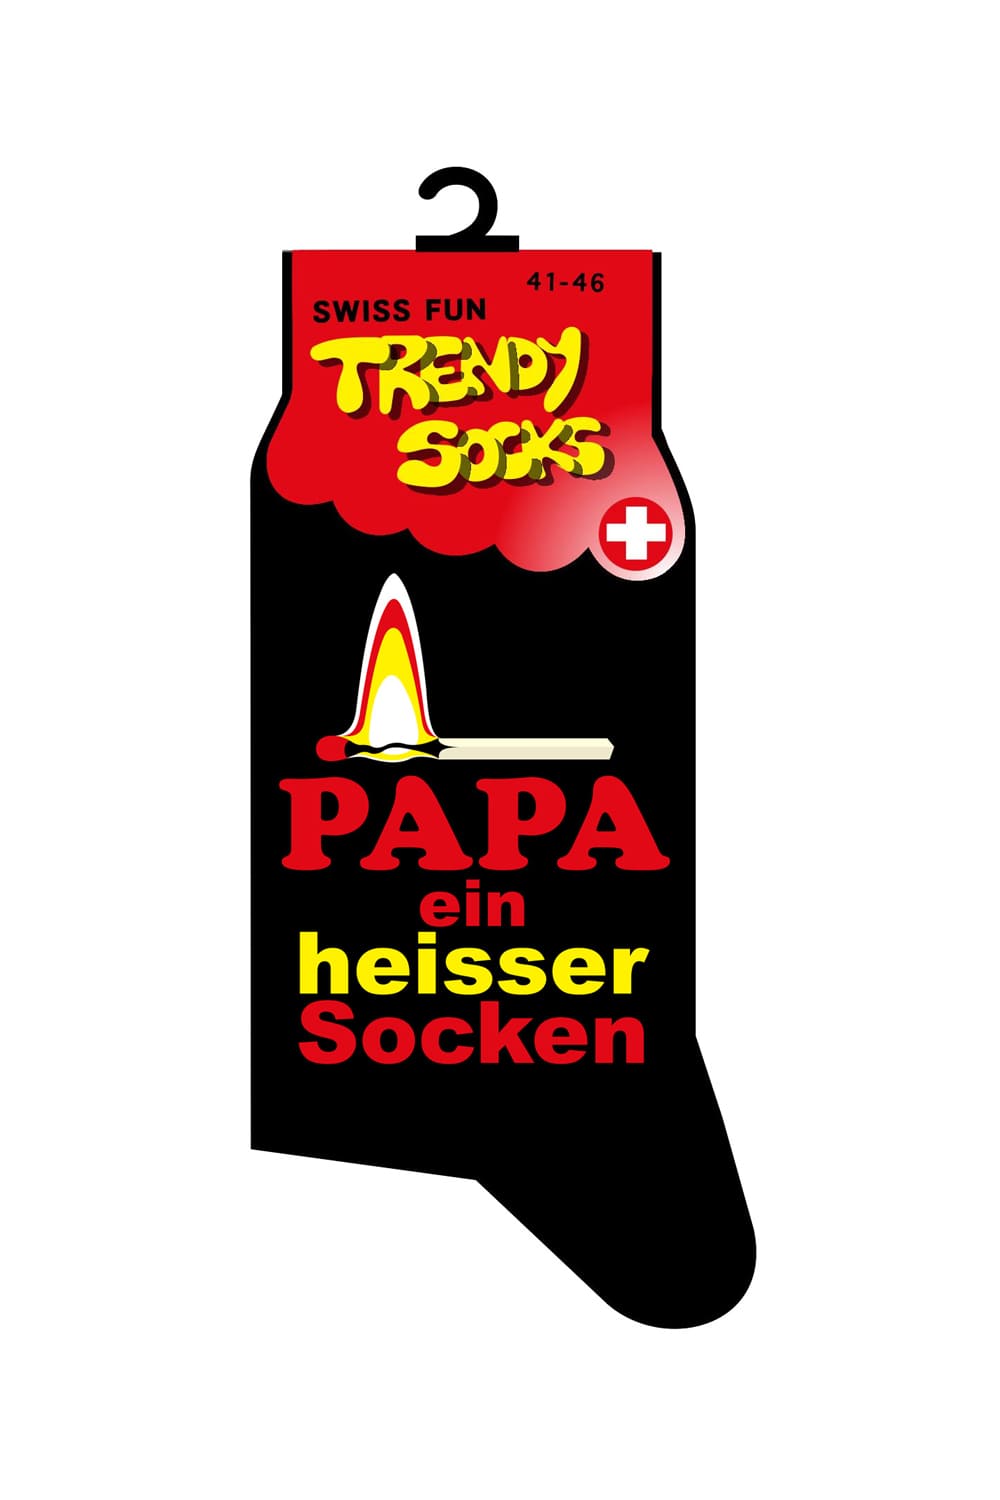 Spasssocken mit dem Spruch: Papa ein heisser Socken. Diese witzigen Socken sind einfach ein grossartiges Geschenk für alle, die Spass lieben und verstehen. Diese ultimativen Spruchsocken bieten ein originelles Geschenk für alle Papas.